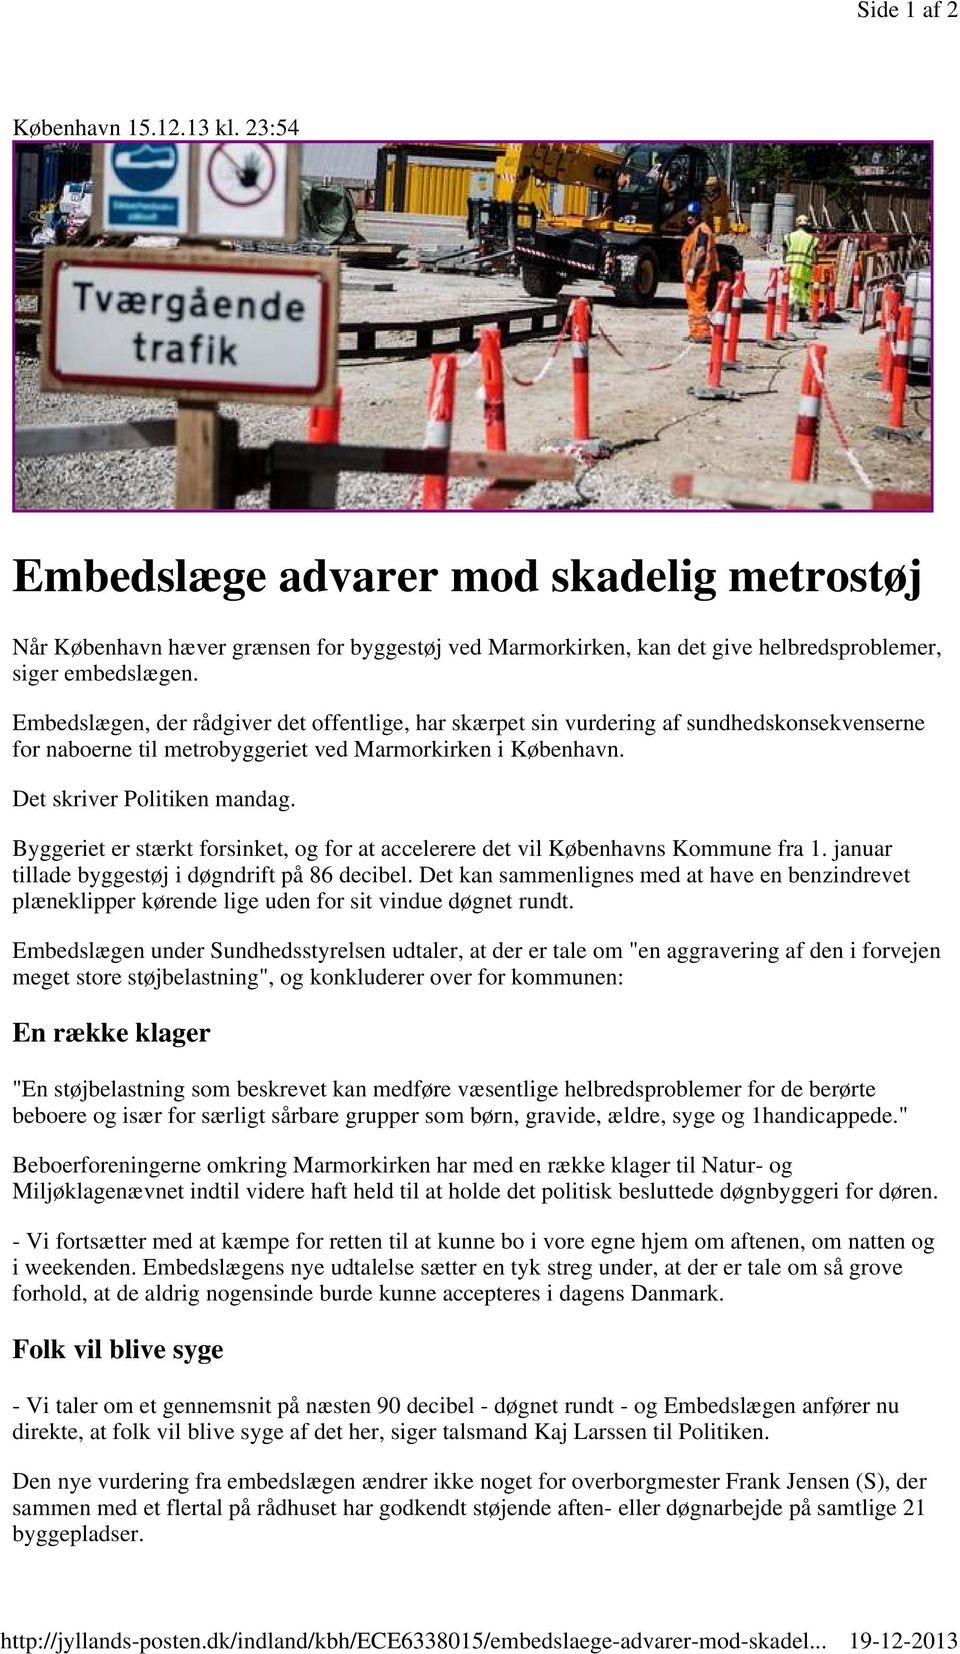 Embedslægen, der rådgiver det offentlige, har skærpet sin vurdering af sundhedskonsekvenserne for naboerne til metrobyggeriet ved Marmorkirken i København. Det skriver Politiken mandag.